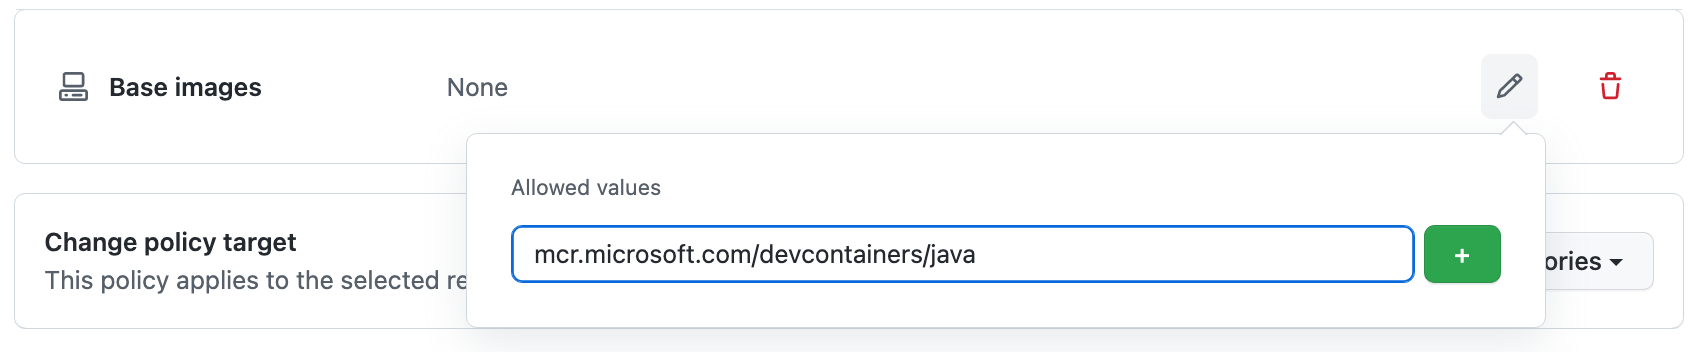 "허용되는 값" 필드에 입력된 URL "mcr.microsoft.com/vscode/devcontainers/java"의 스크린샷